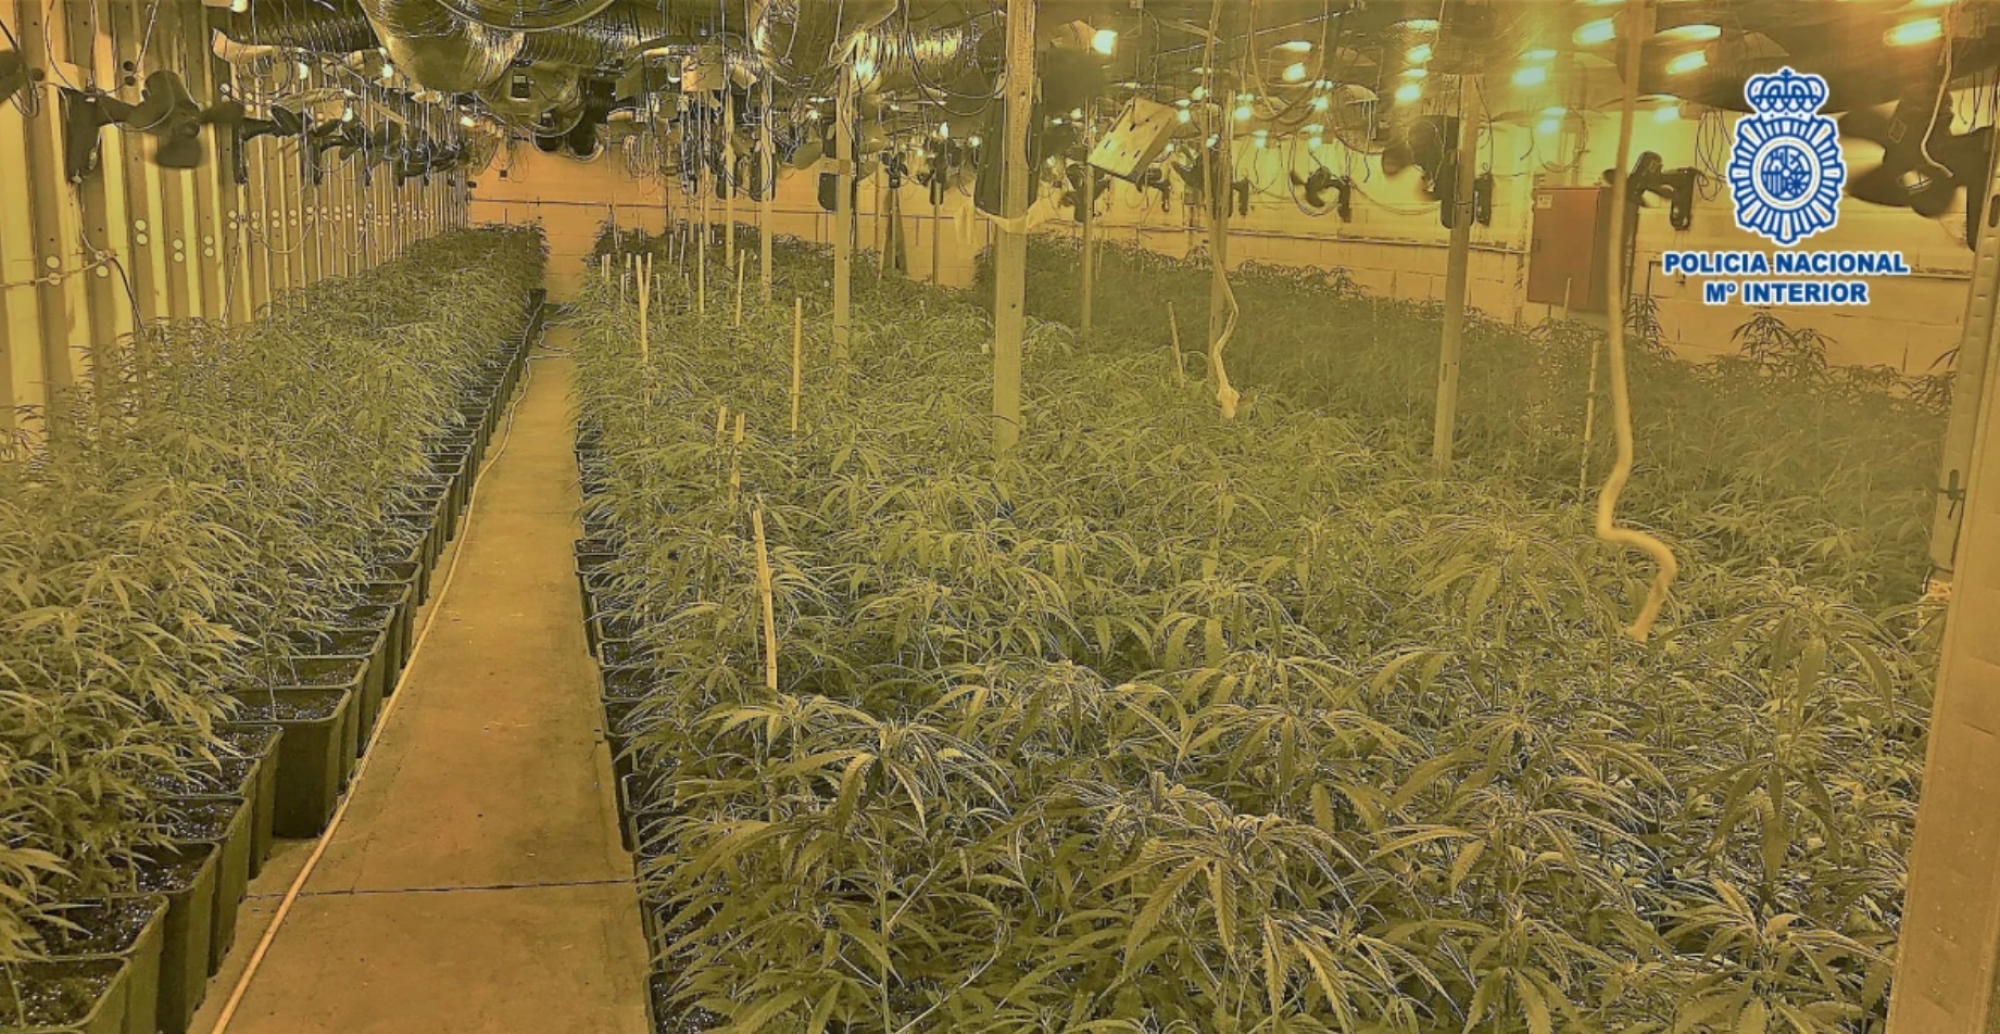 Tráfico de marihuana a gran escala: detenido por cultivar 525 plantas en un domicilio de Begues